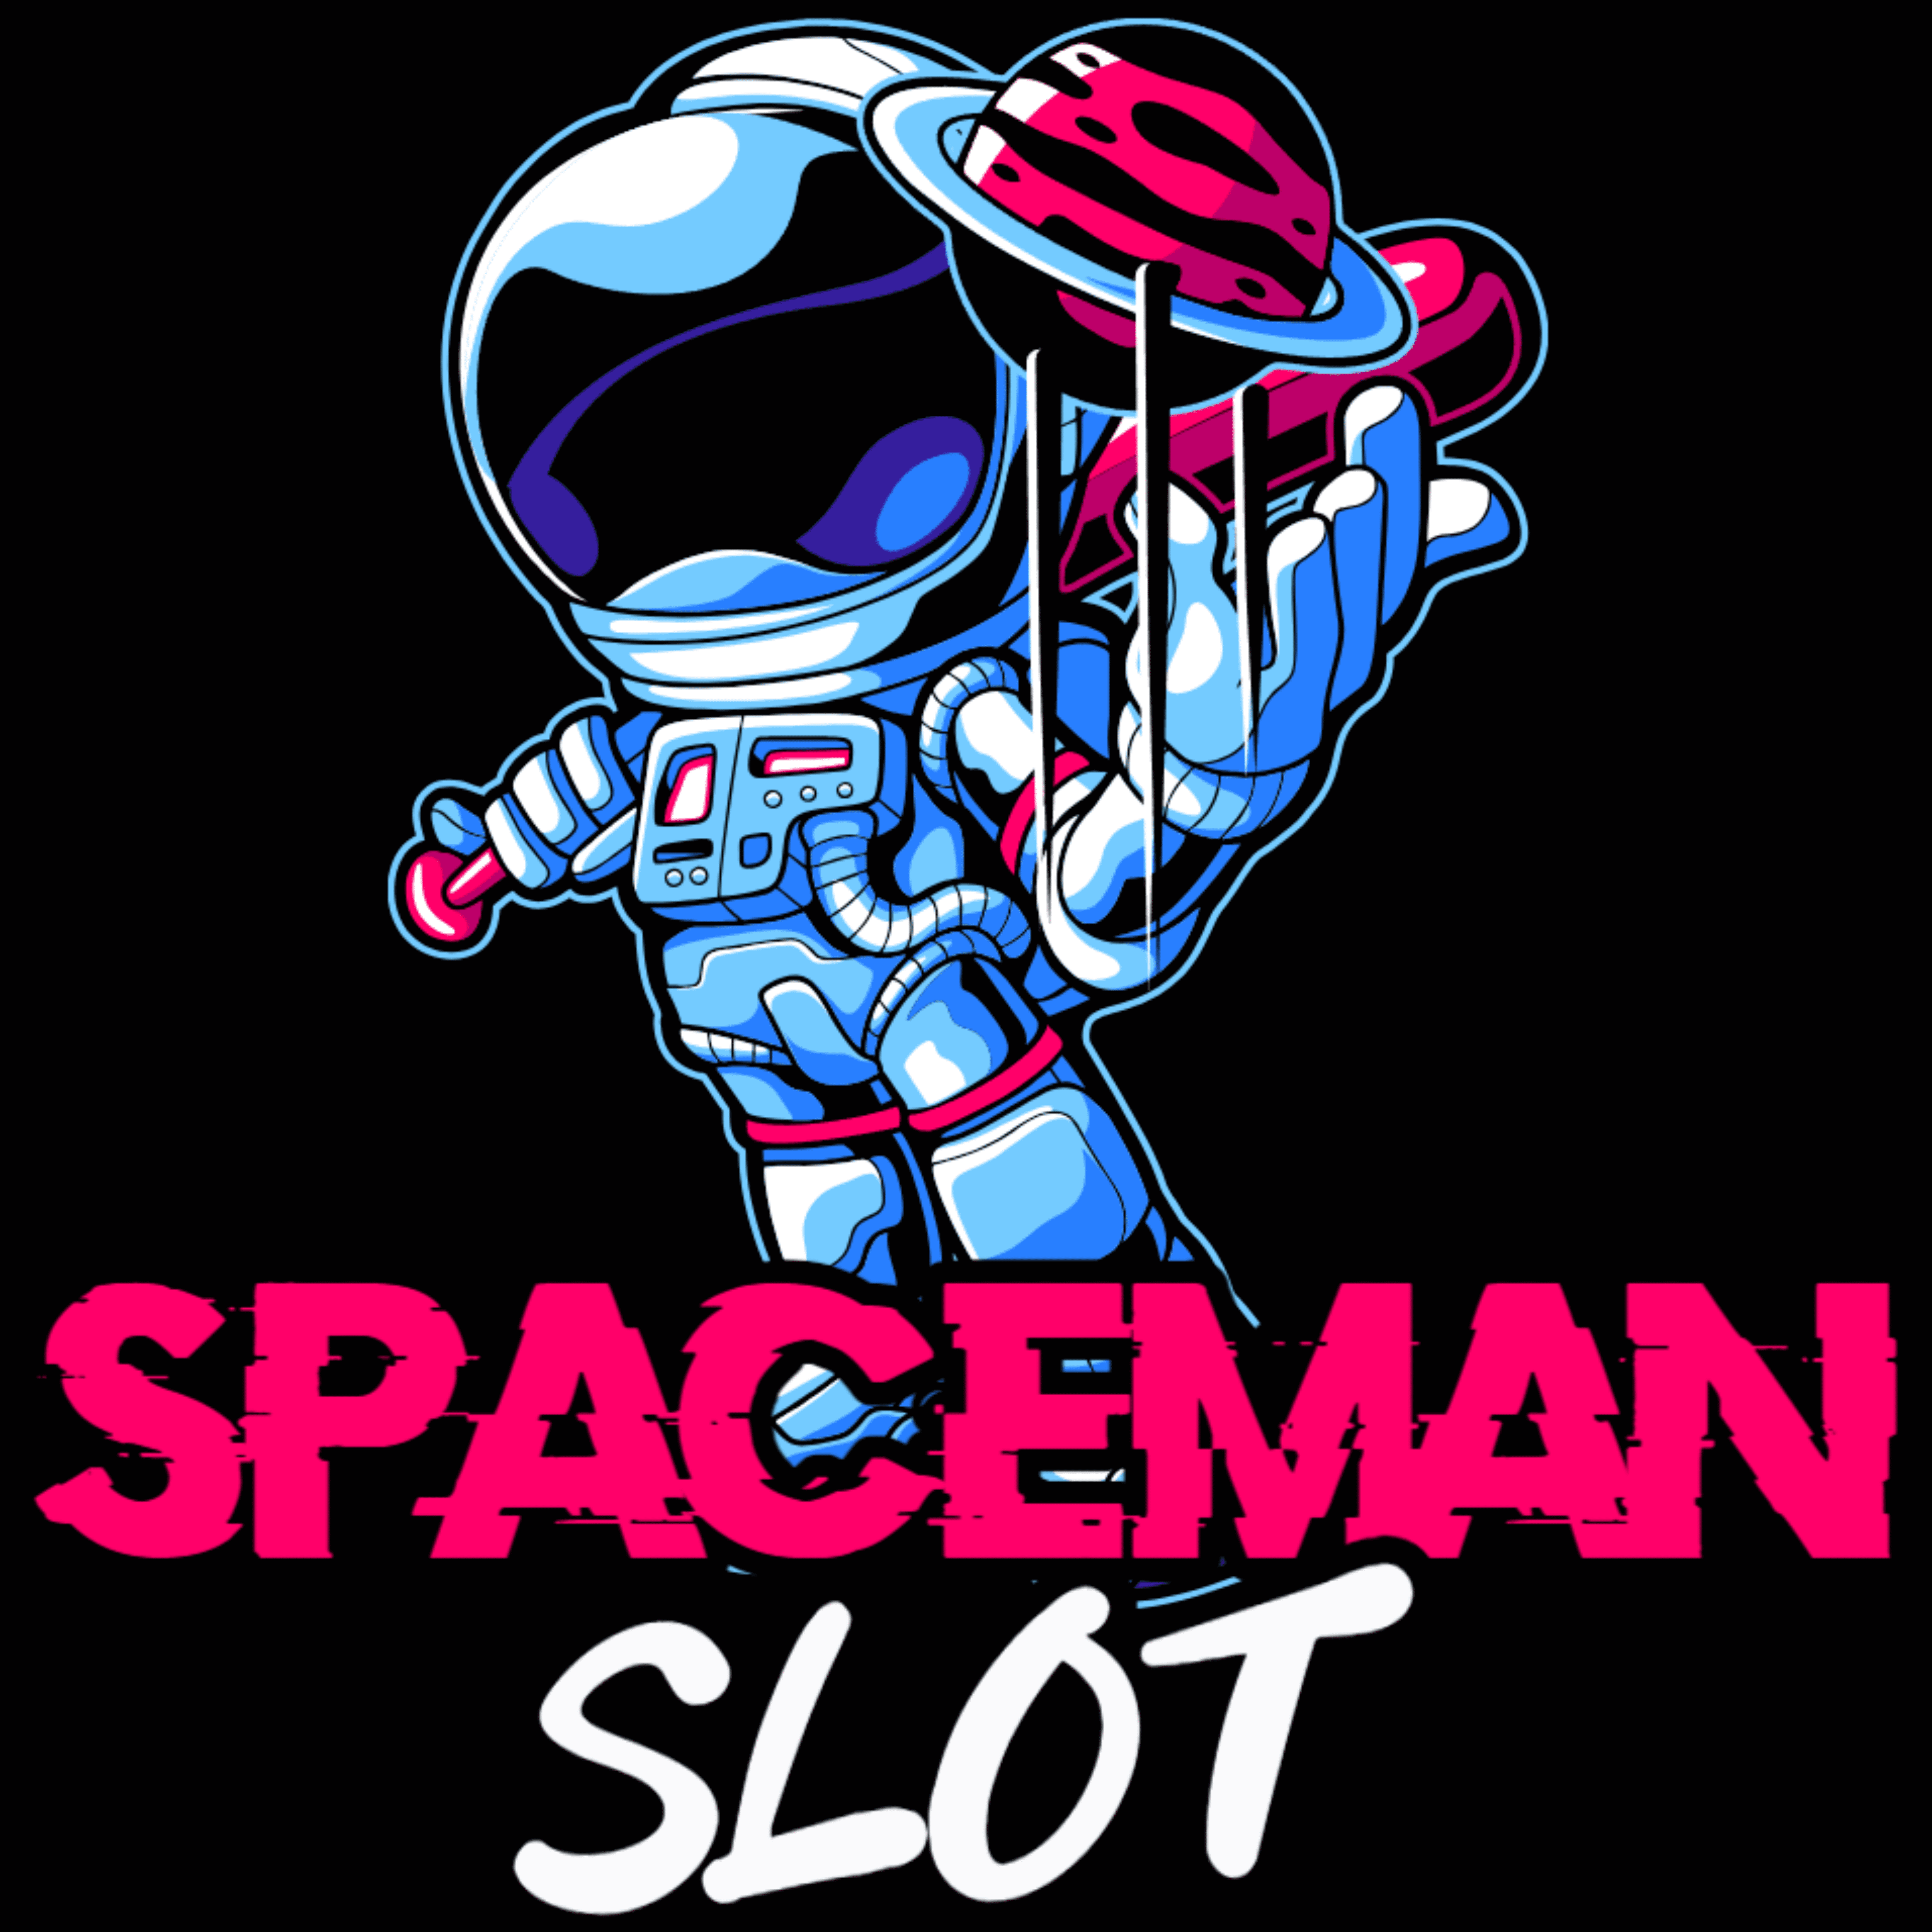 Rahasia Spaceman Slot: Tips Gacor dan Mudah Menang Terbaru